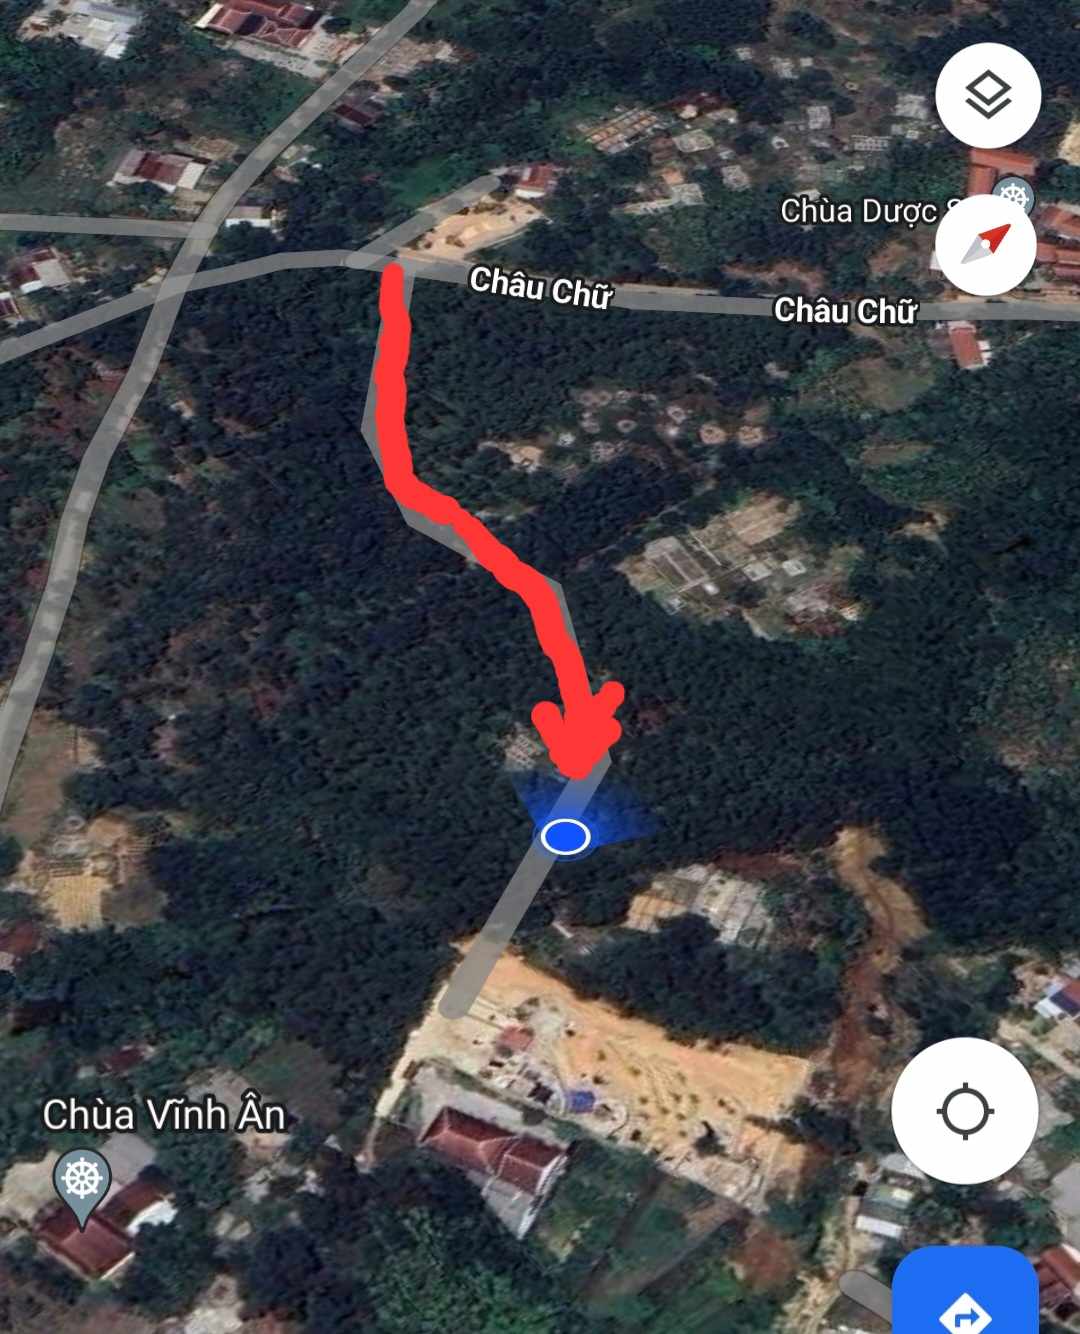 Khu vực cây thông bị chặt hạ đều nằm ngay mép đường (mũi tên màu đỏ) dẫn vào công trình tịnh thất, ít nhà dân và một công trình đang xây dựng giống phong cách biệt thự khá đồ sộ. Ảnh: Google Maps.